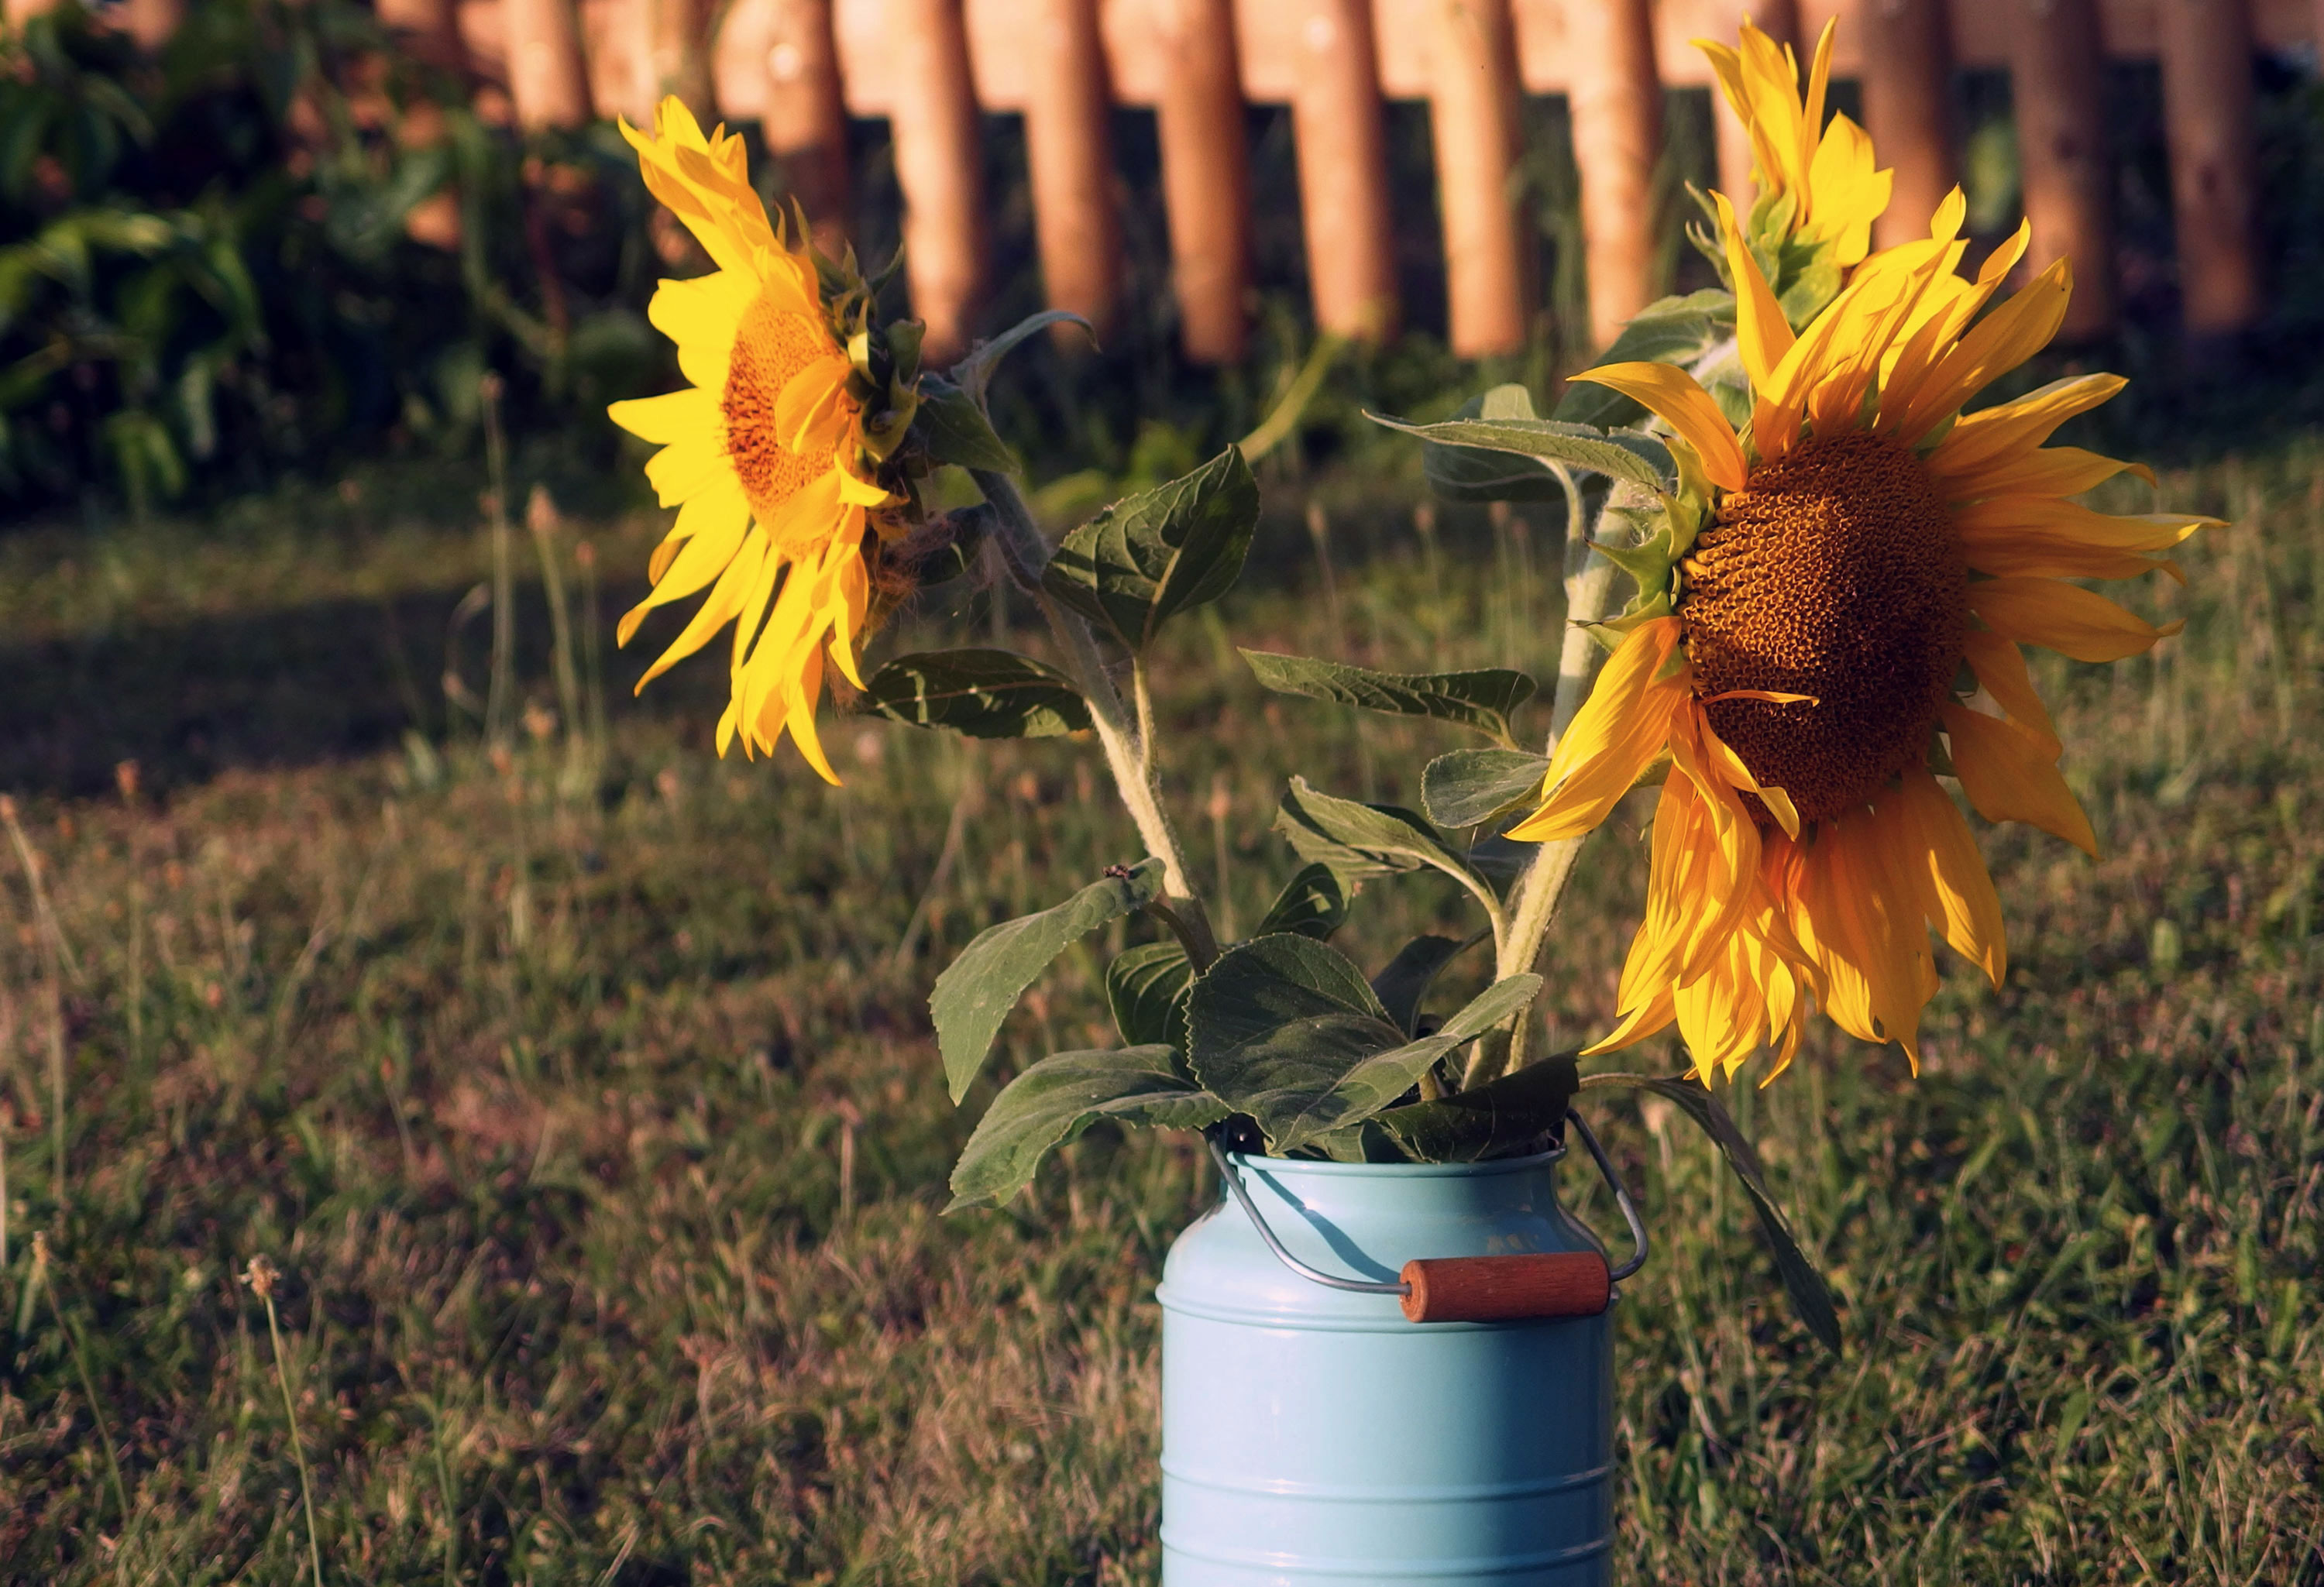 Sunflowers | Free Stock Photo | LibreShot